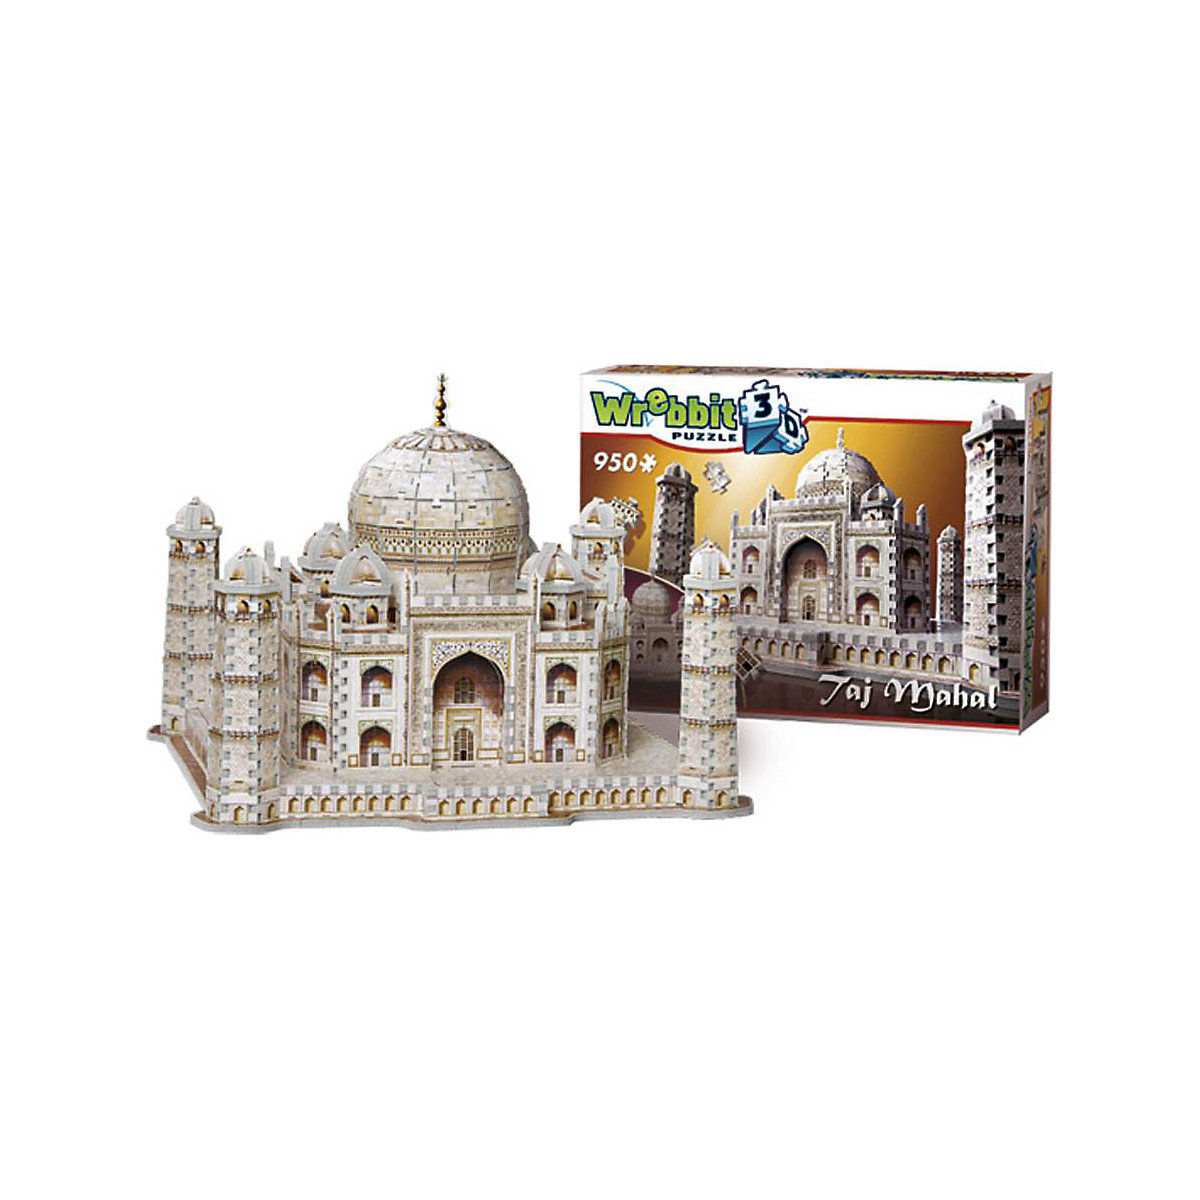 Wrebbit 3D Puzzle 950 Teile Taj Mahal GU6689